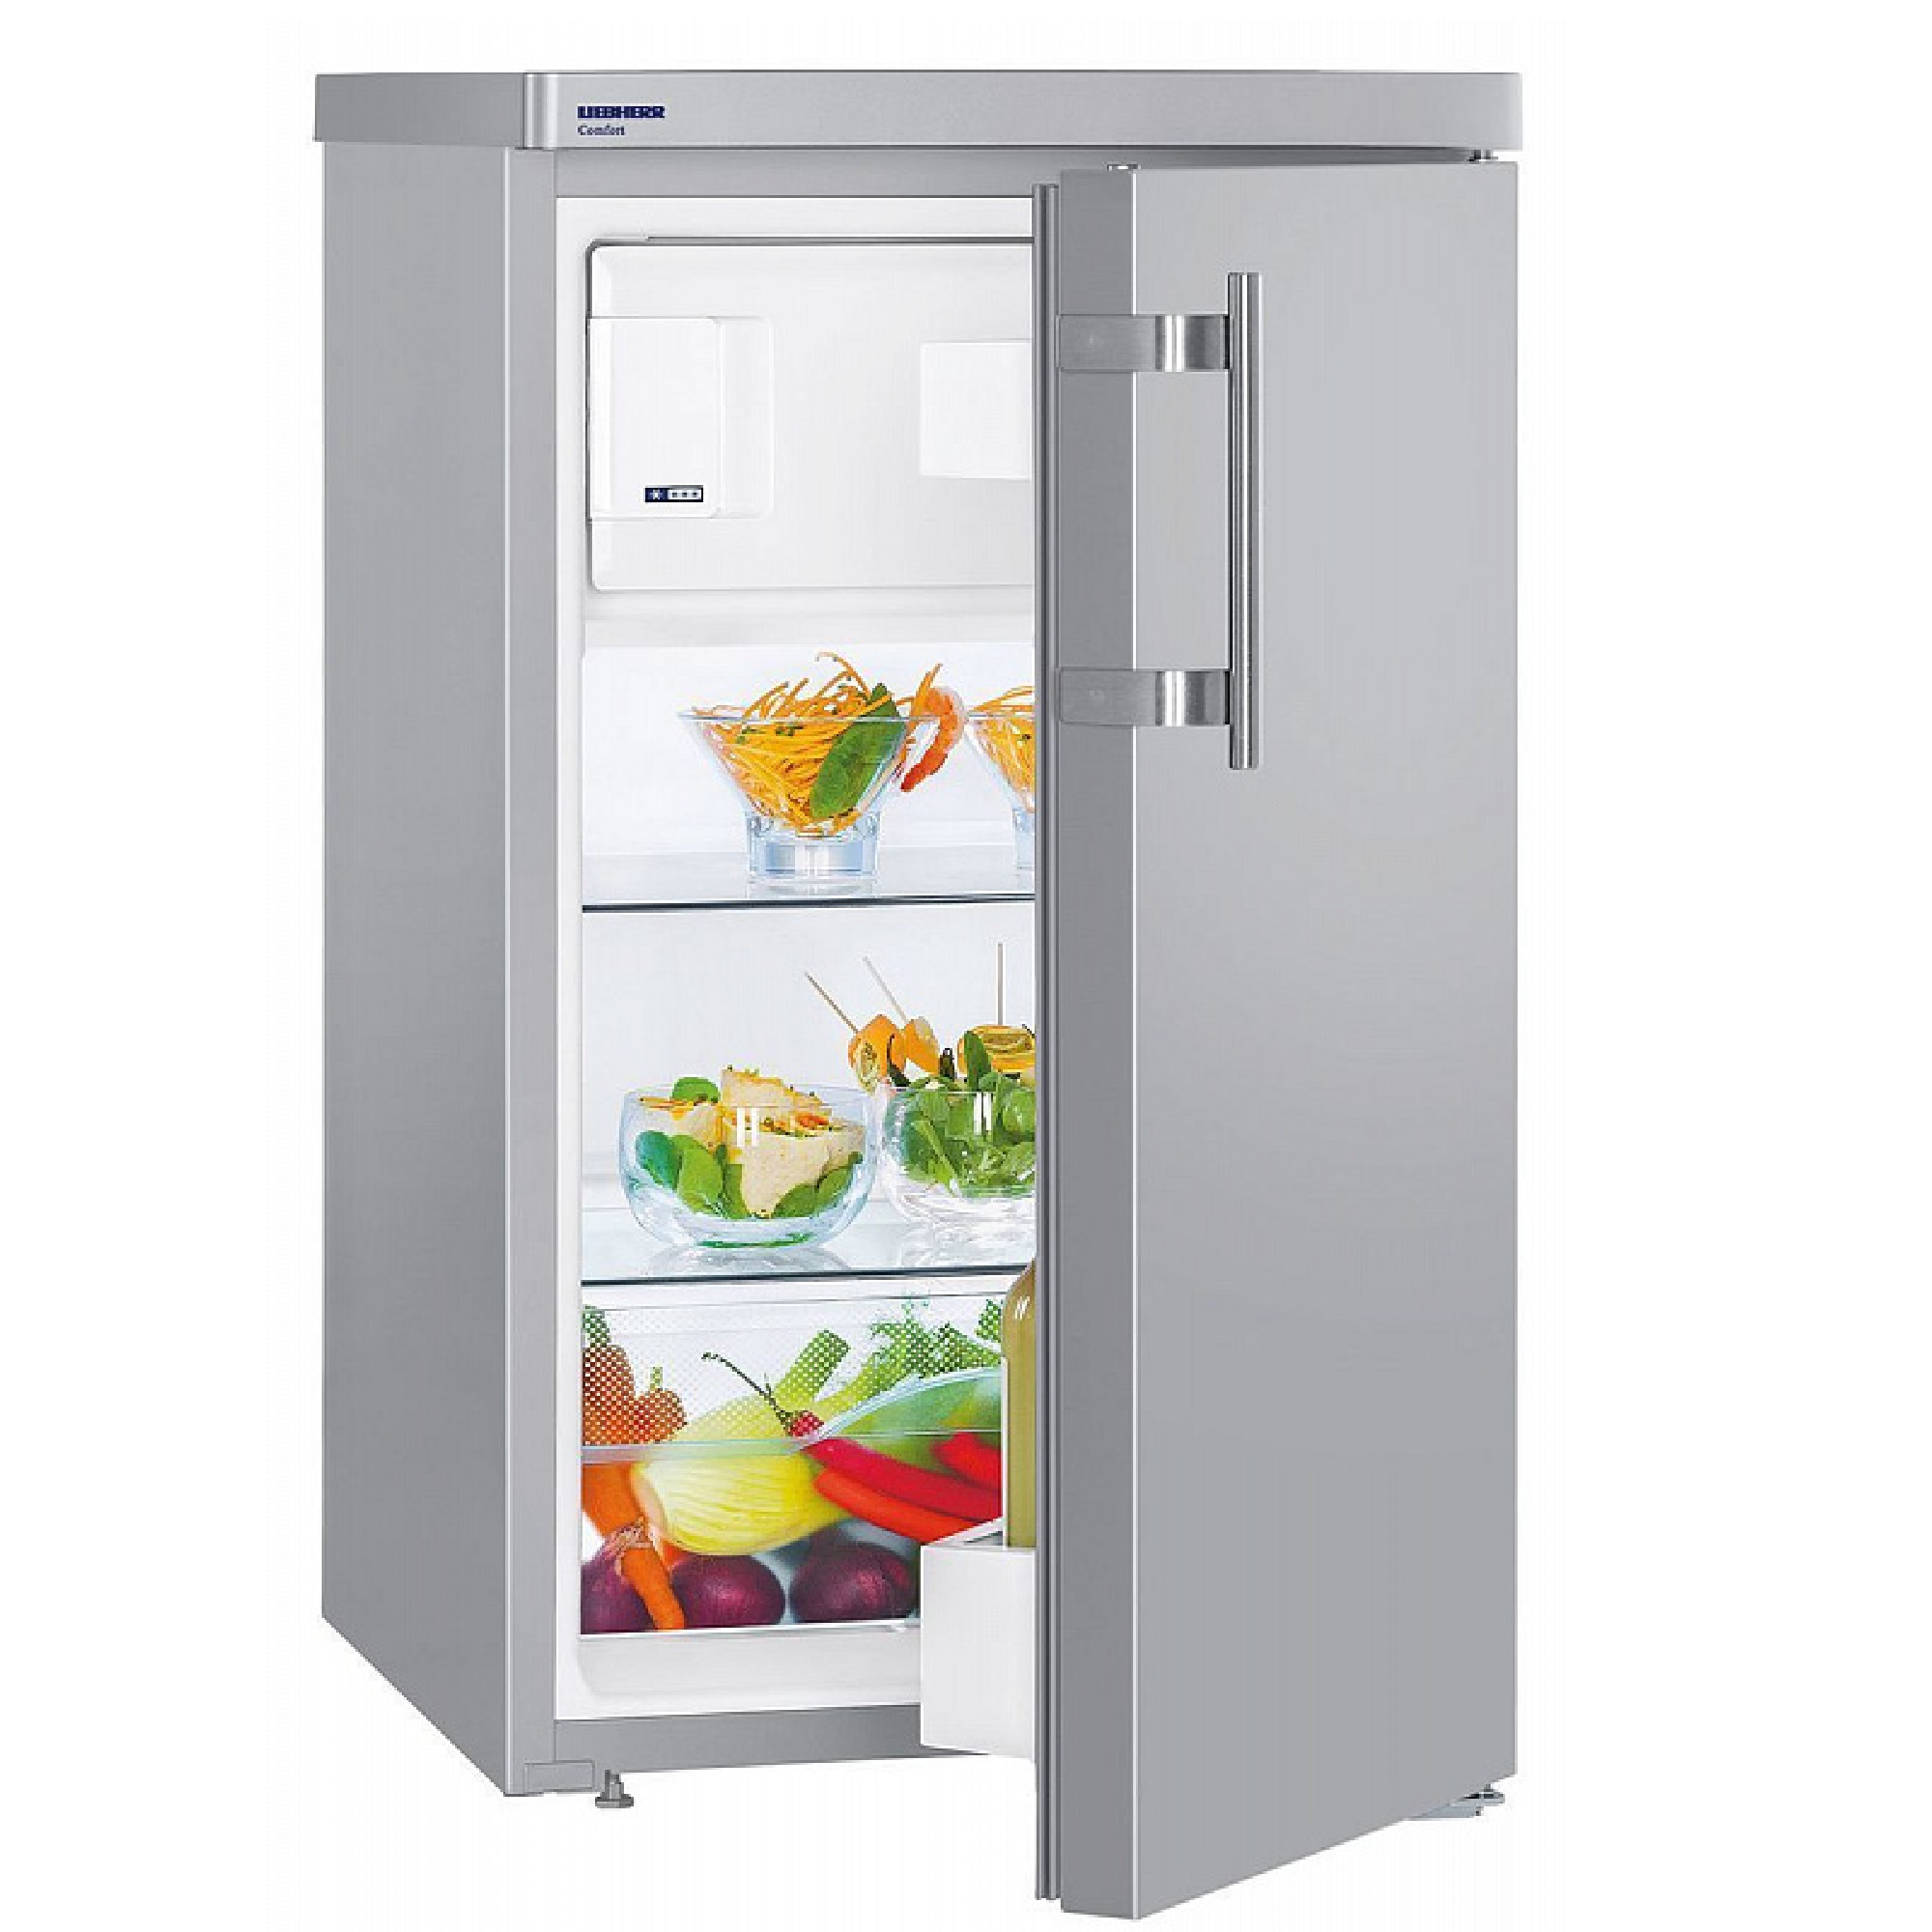 Купить холодильник в воронеже недорого. Холодильник Liebherr TSL 1414 Comfort. Холодильник Liebherr TSL 1414 серебристый. Холодильник Либхер однокамерный с морозилкой. Холодильник Либхер однокамерный с морозилкой 140.